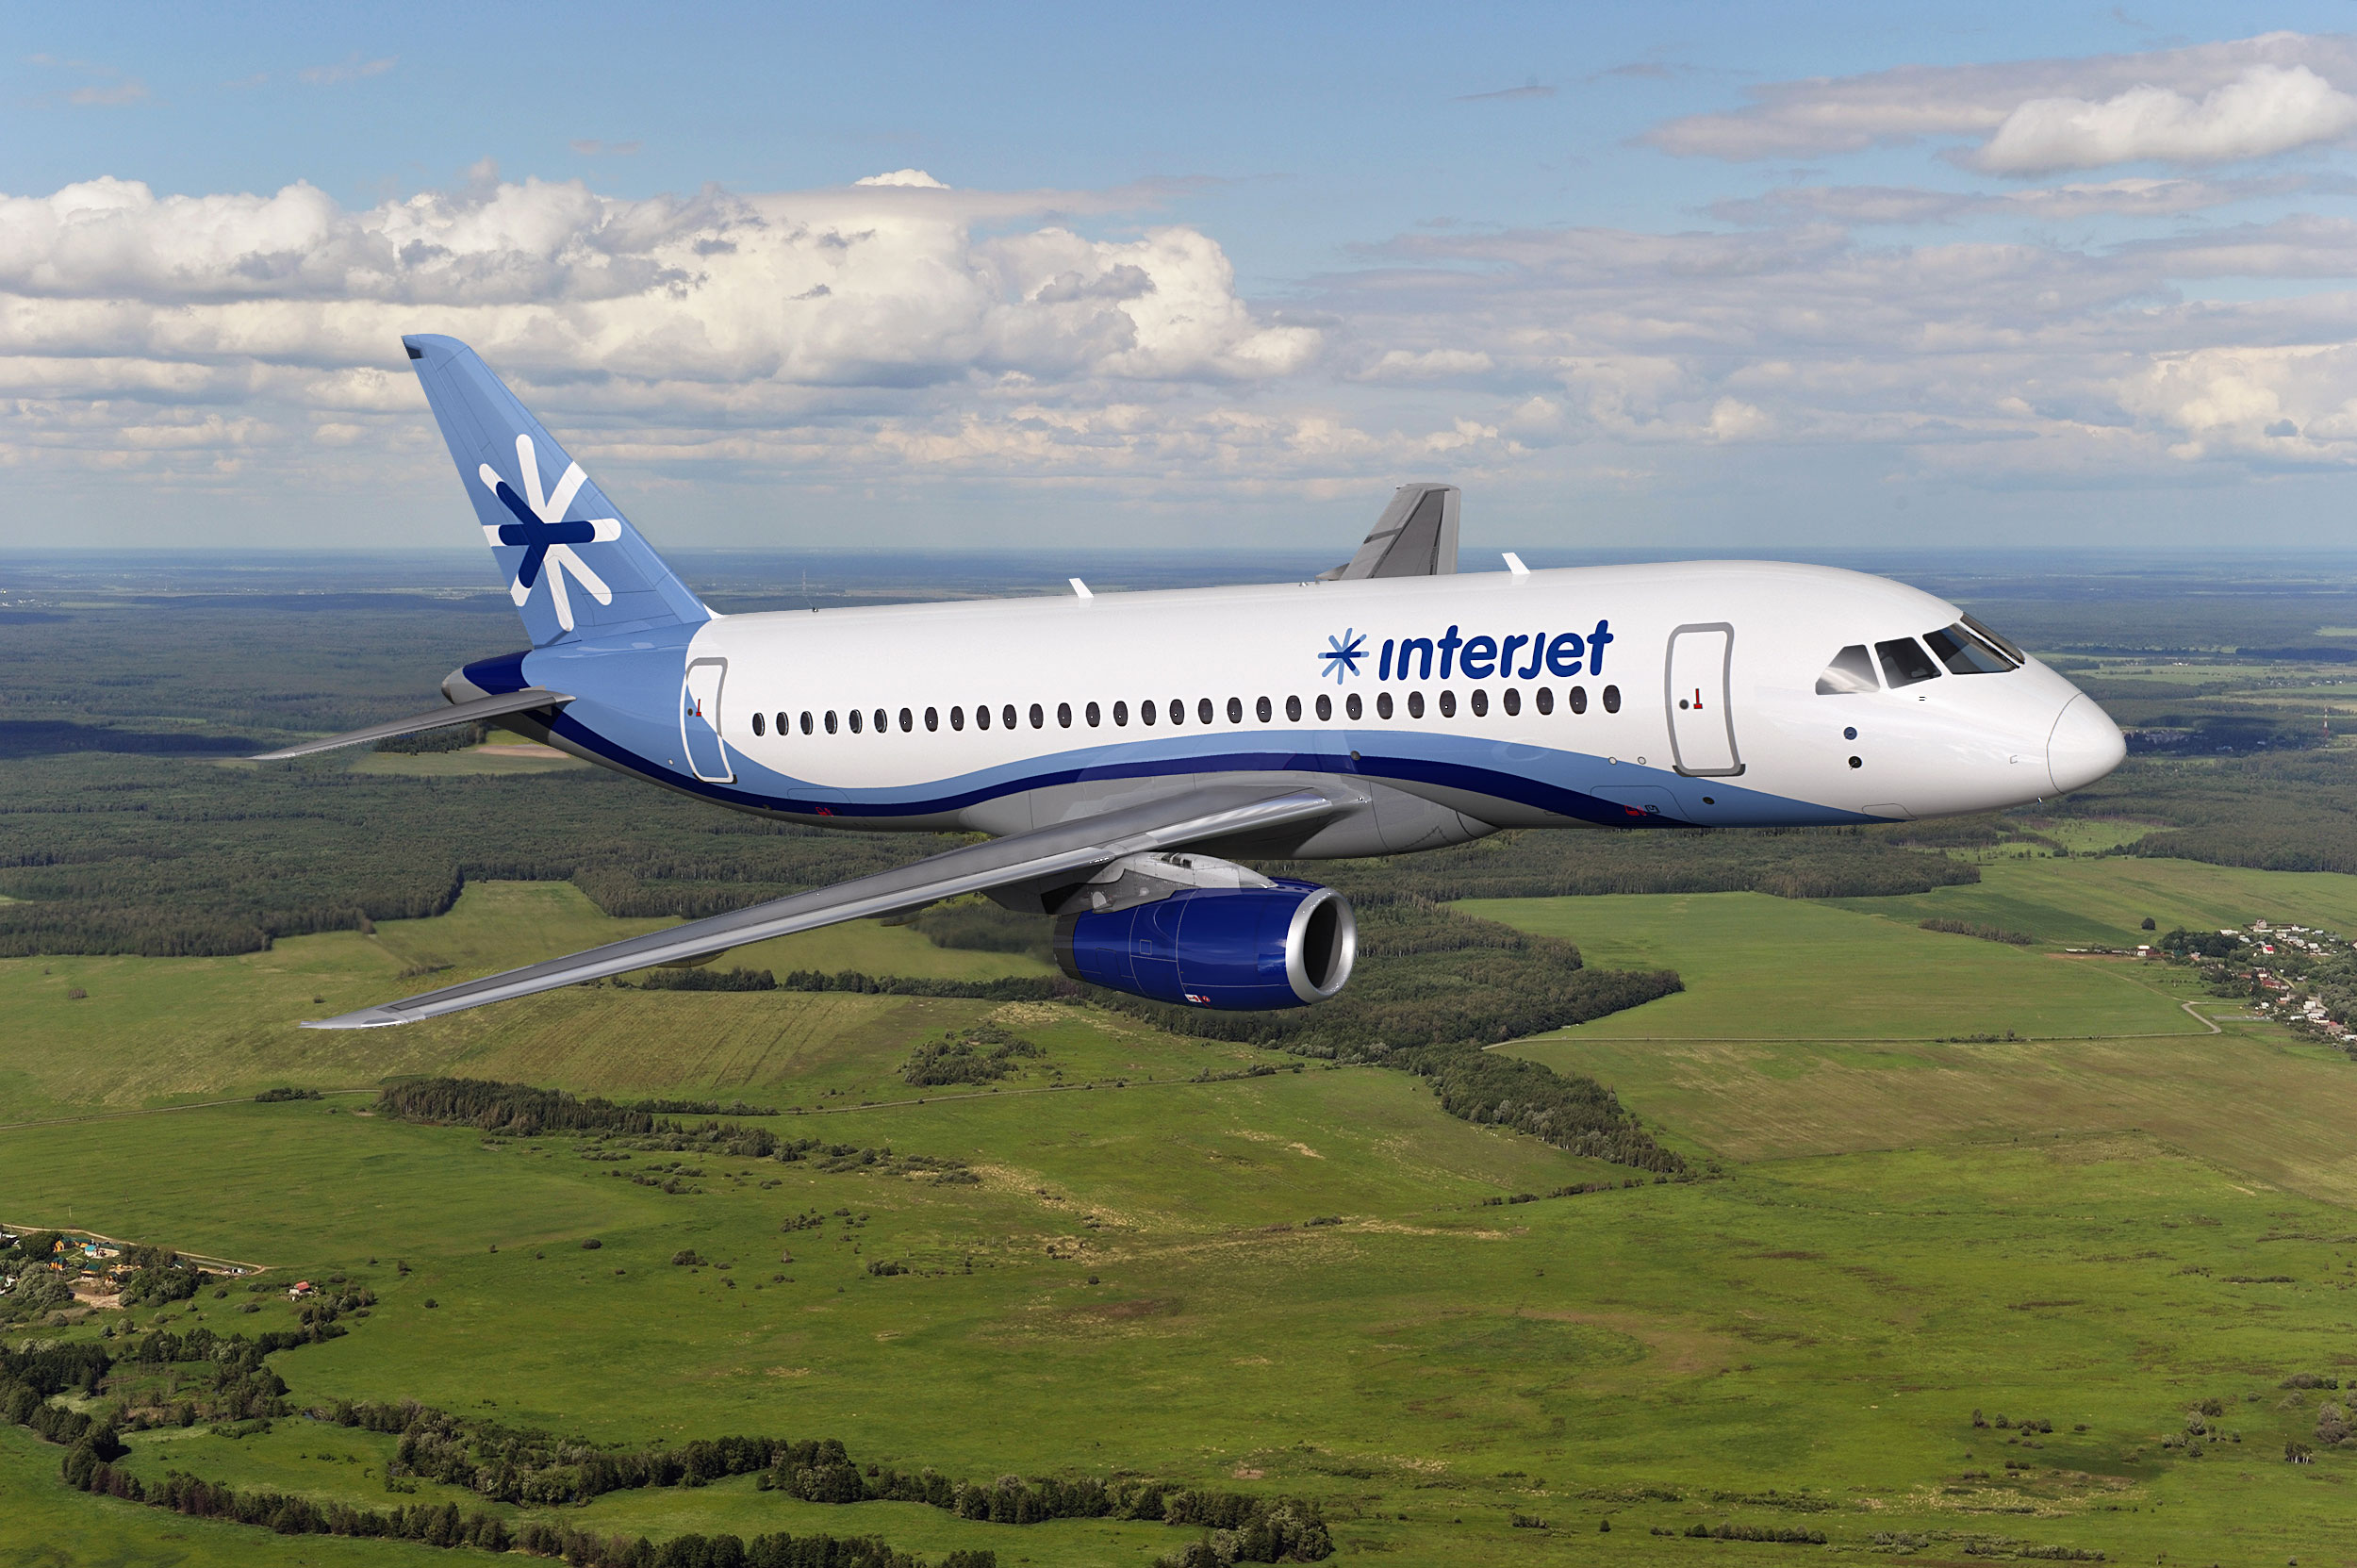 Interjet recibe Certificado de “Industria Limpia”